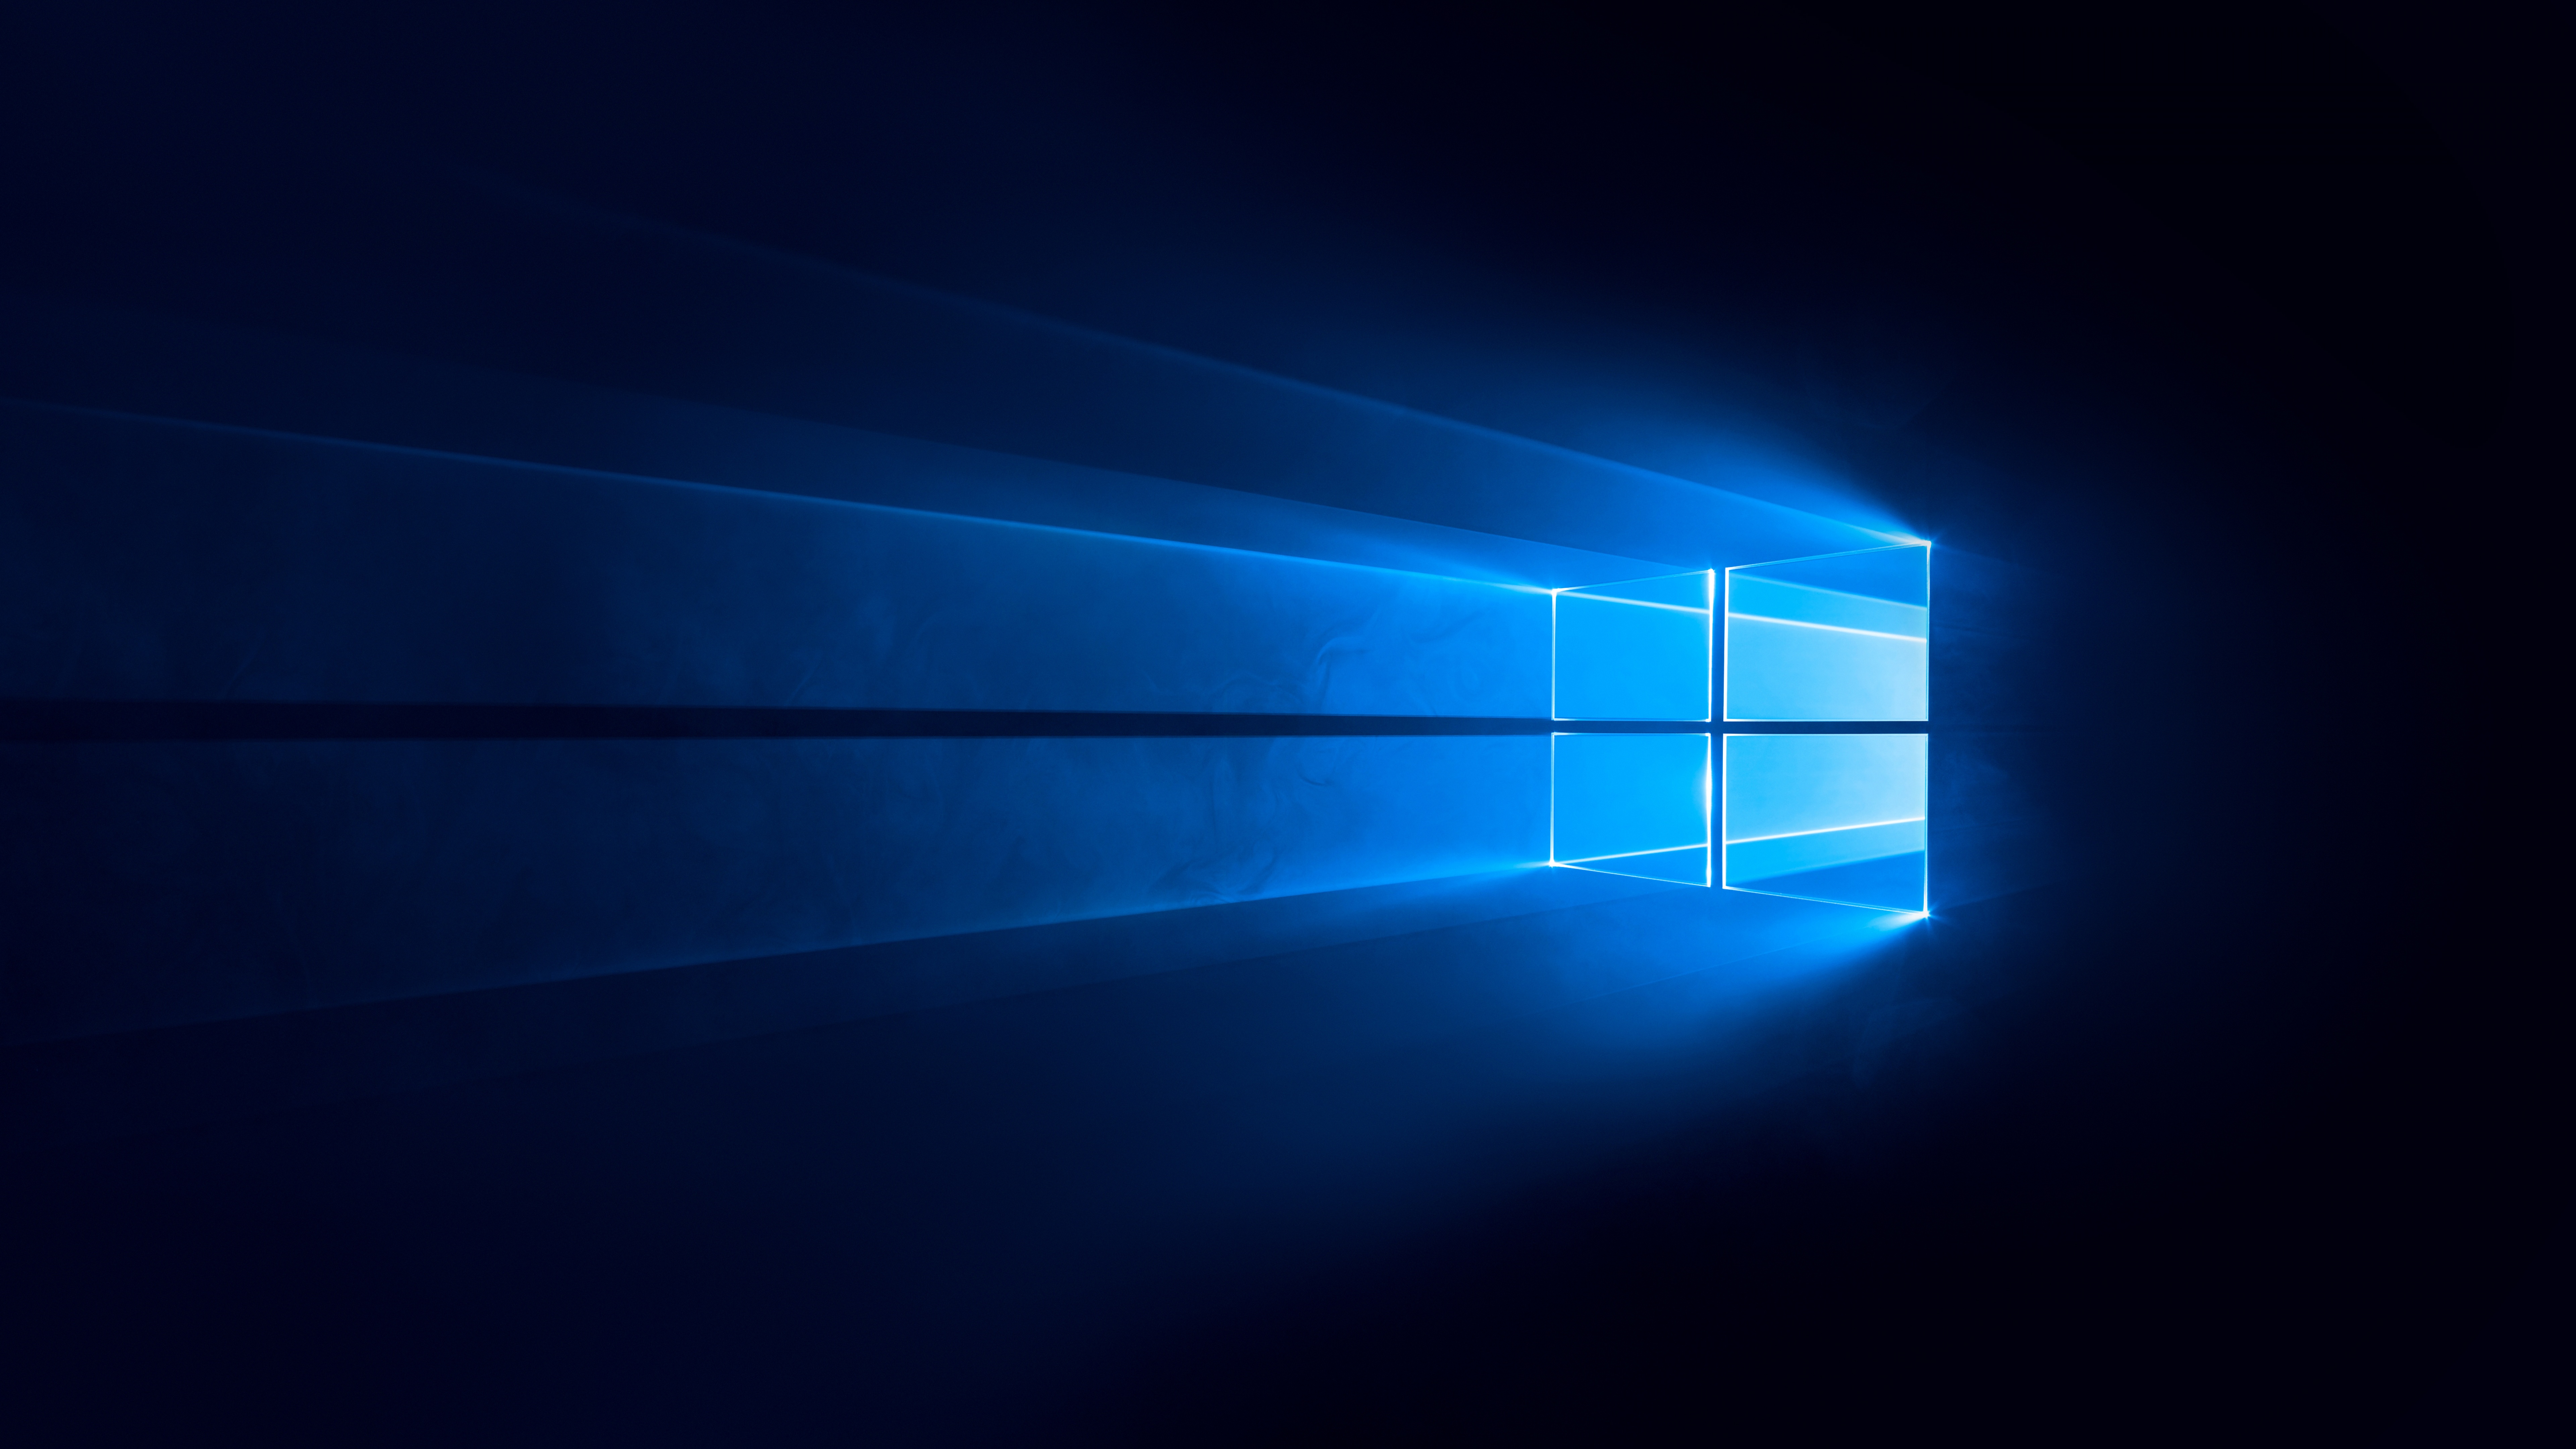 Windows 10 Wallpaper 4K, Dark, Blue background, Technology, #733: Bạn muốn làm mới màn hình máy tính của mình với bức ảnh nền về công nghệ? Chúng tôi có thể giúp bạn với hình nền Windows 10 độ phân giải 4K với chủ đề màu xanh đáng yêu và thiết kế tối giản nhưng không kém phần hiện đại.